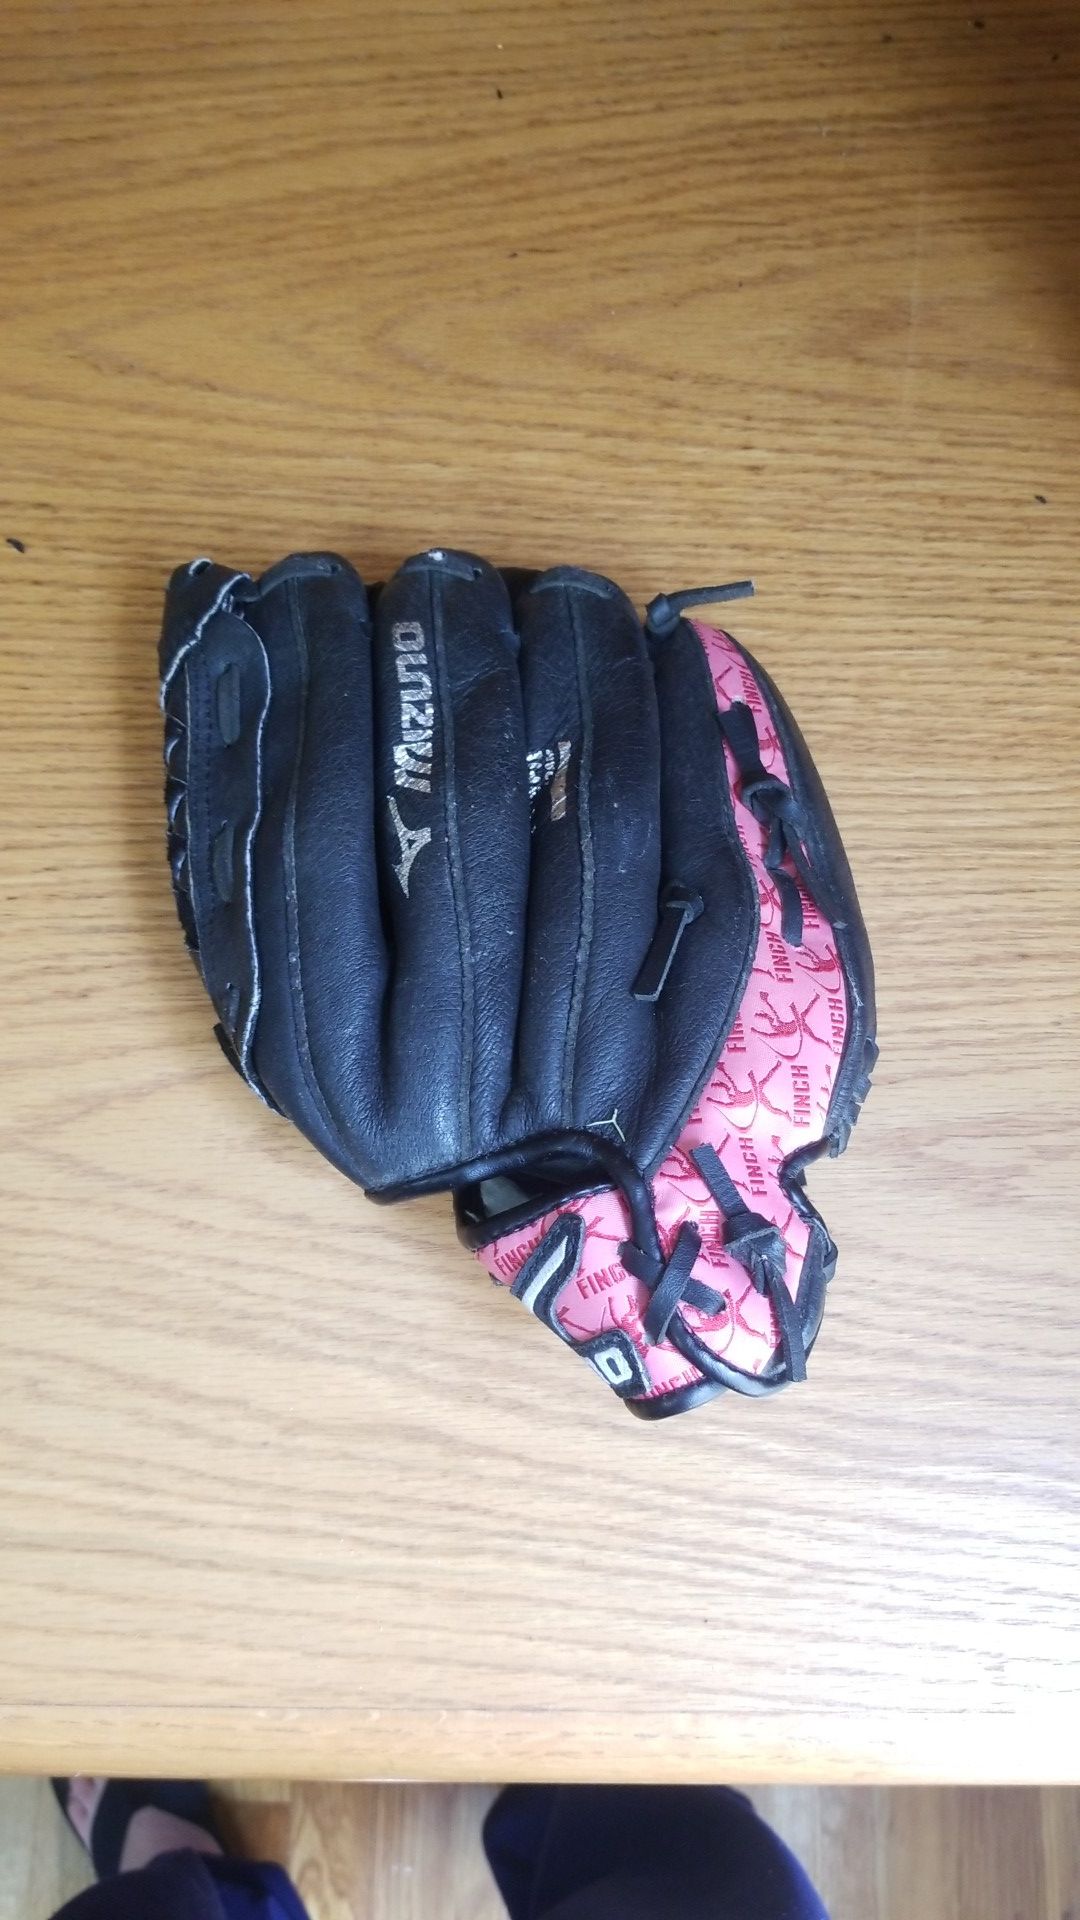 Child's softball glove